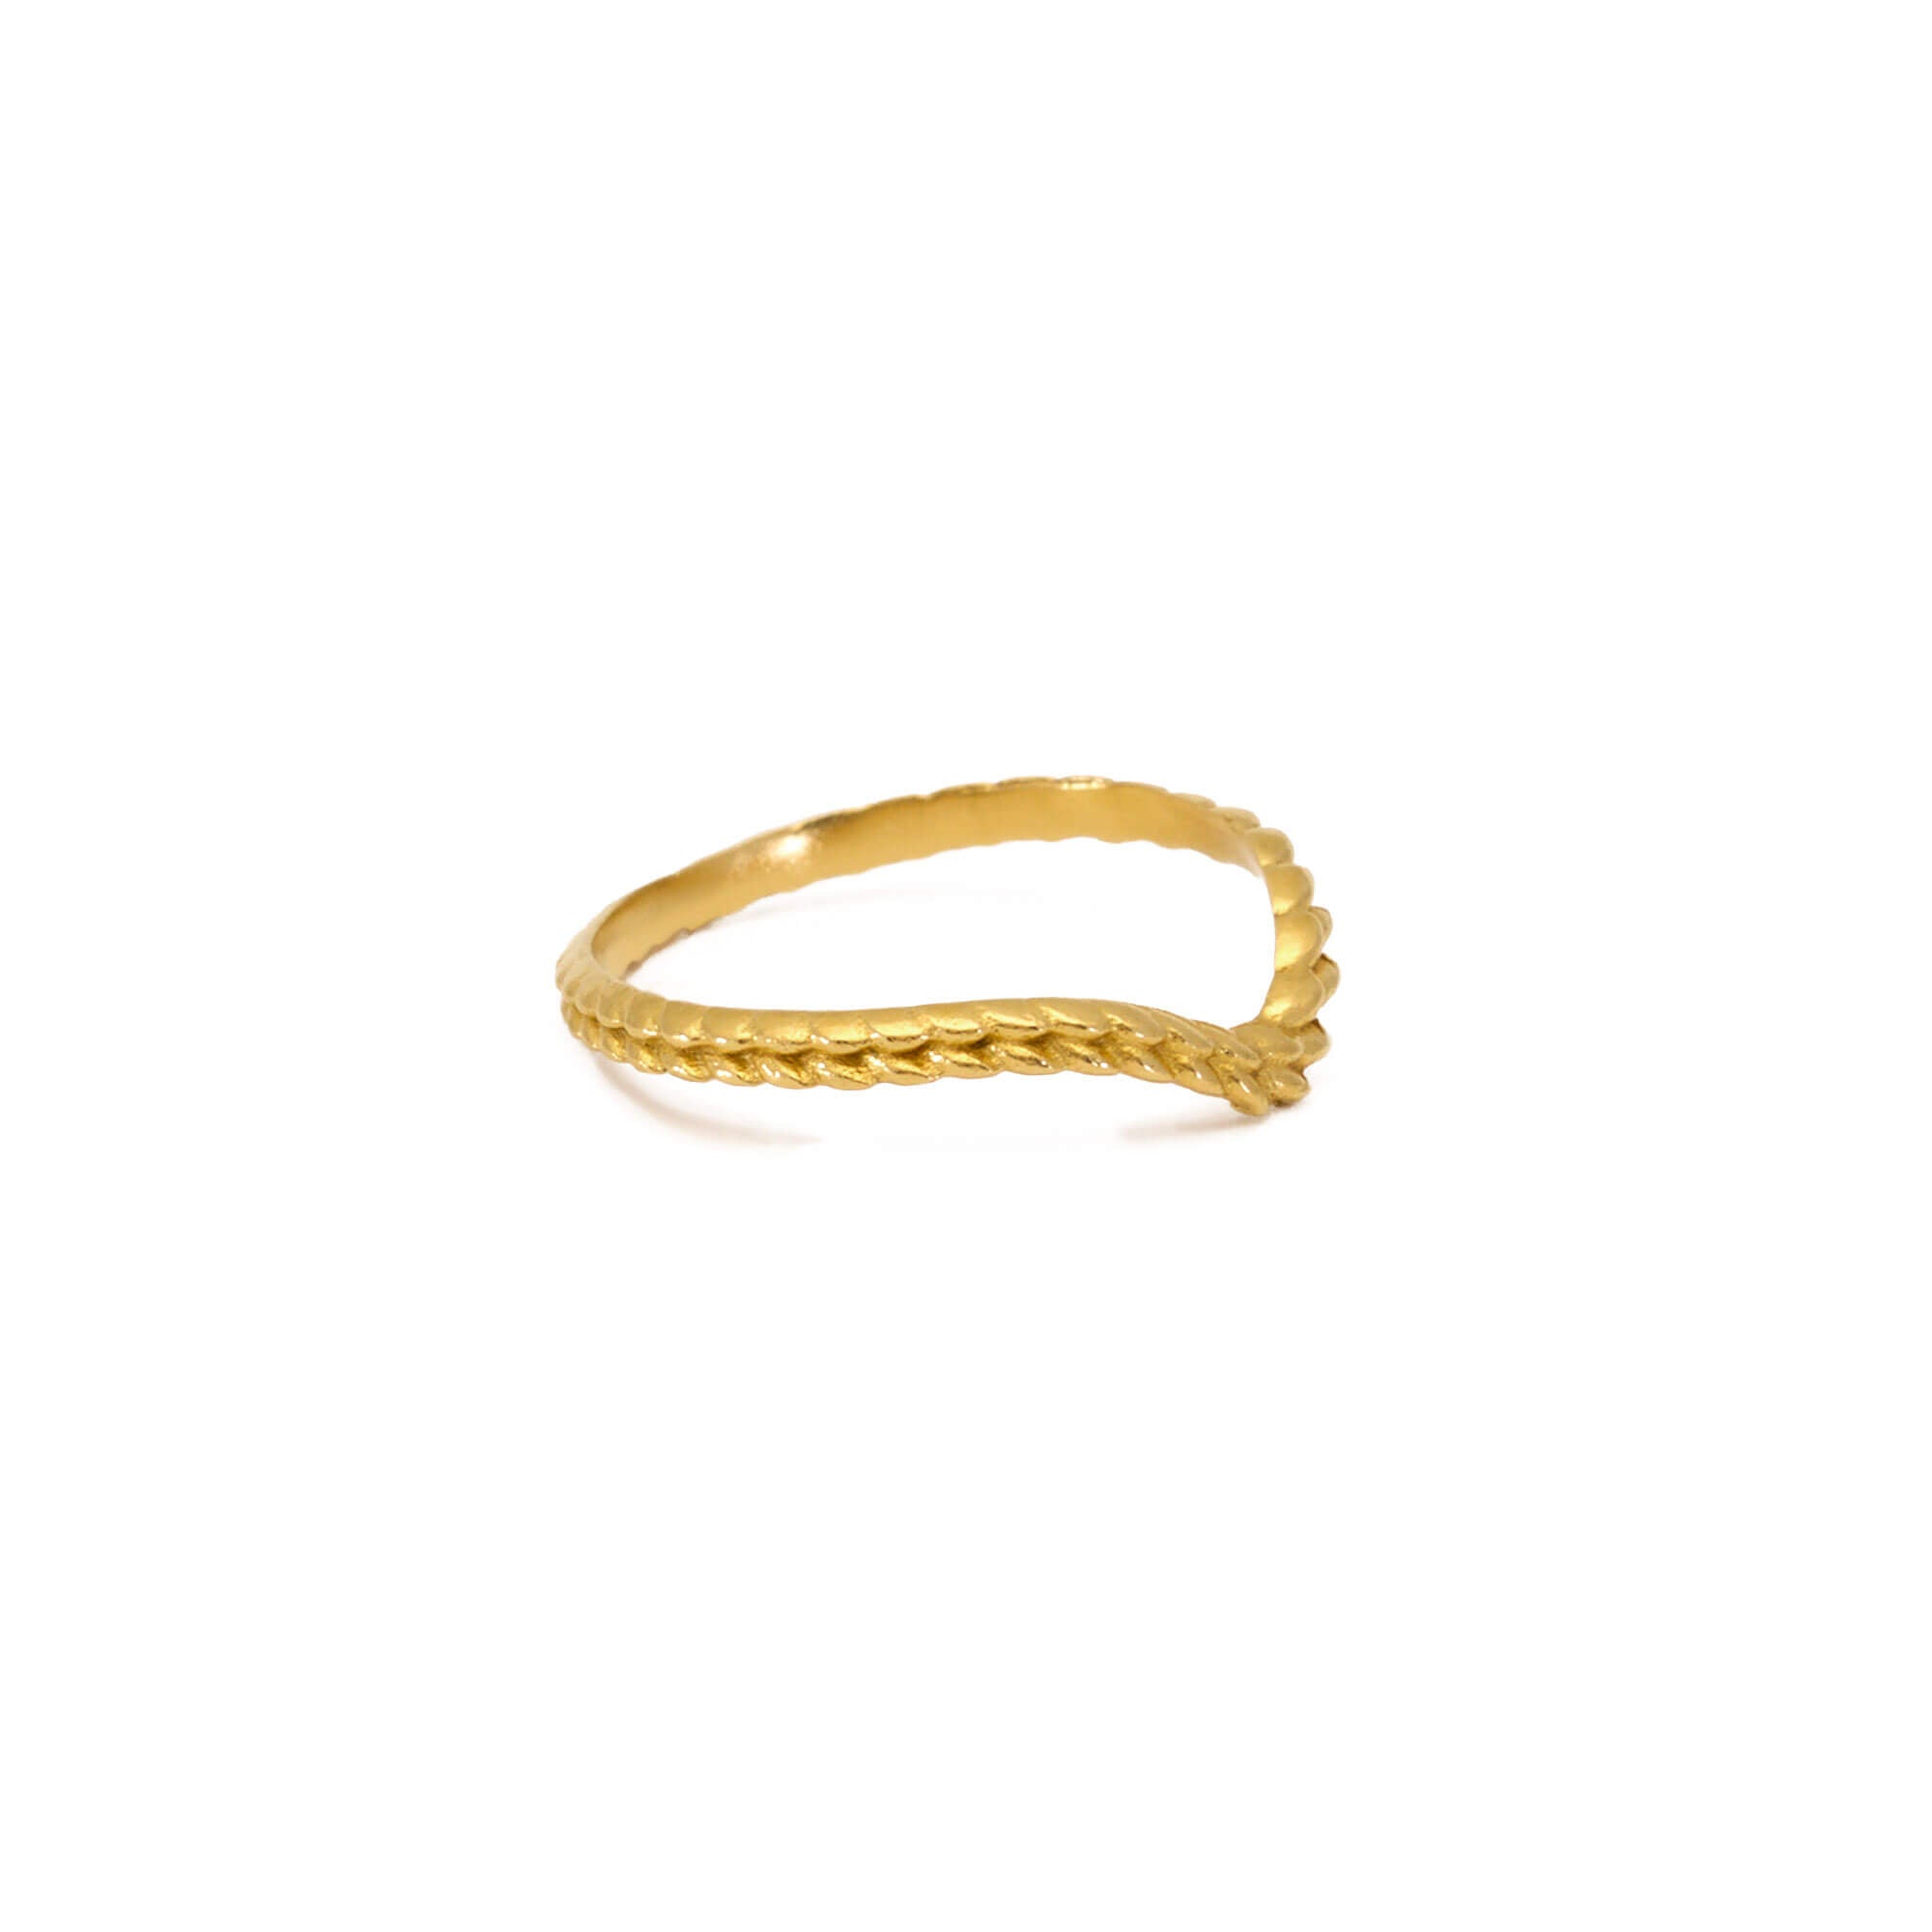 Tagmata Yellow Gold Ring